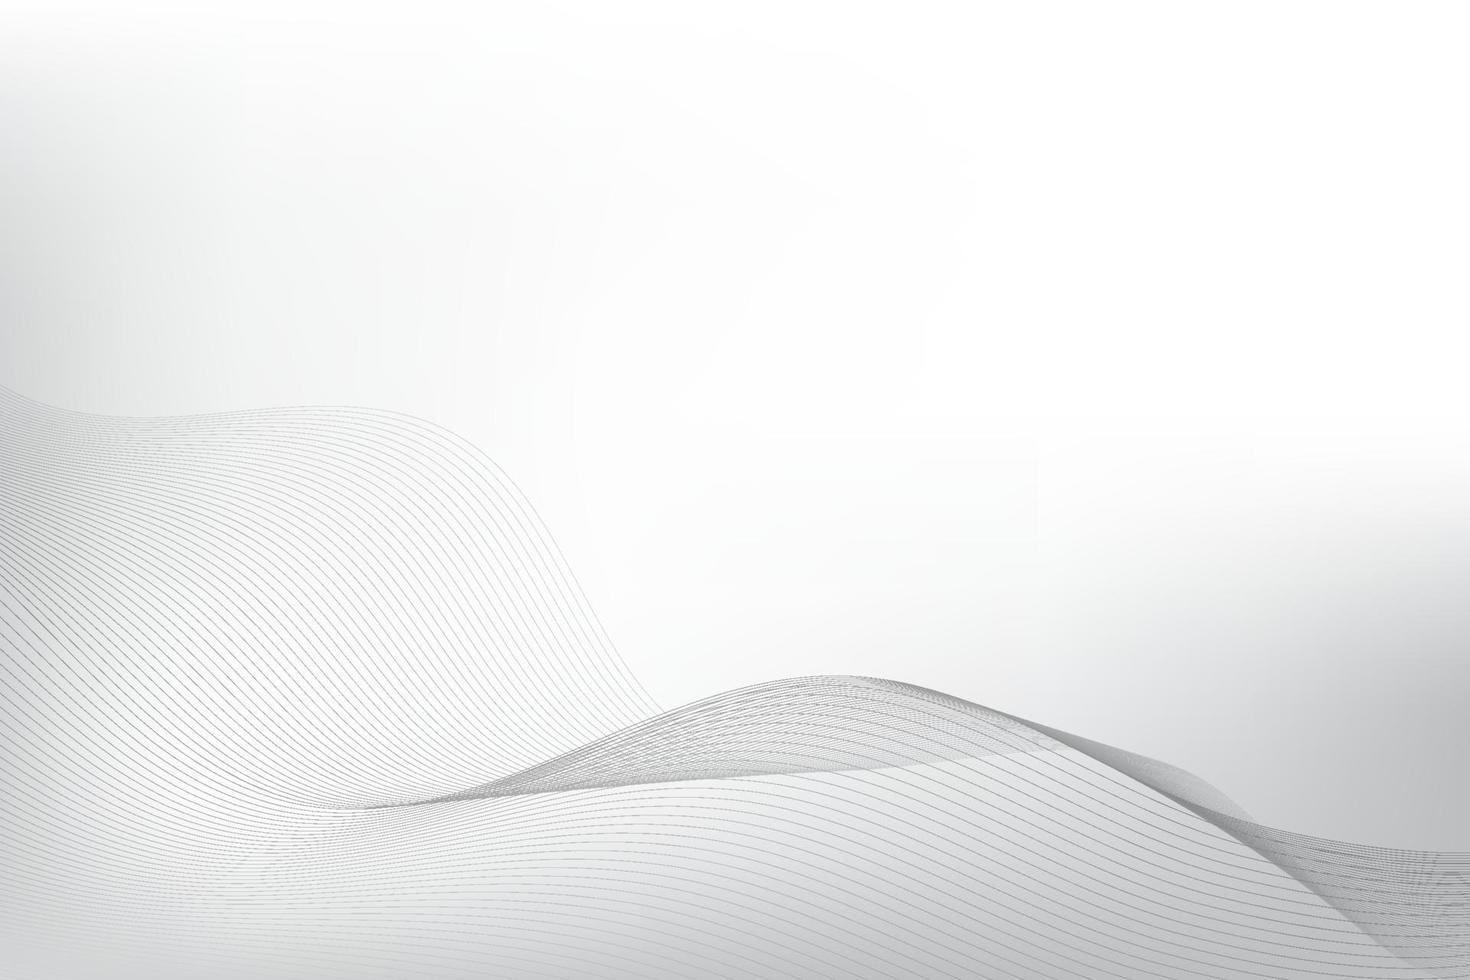 couleur blanche et grise abstraite, fond de rayures de conception moderne avec élément de vague. illustration vectorielle. vecteur